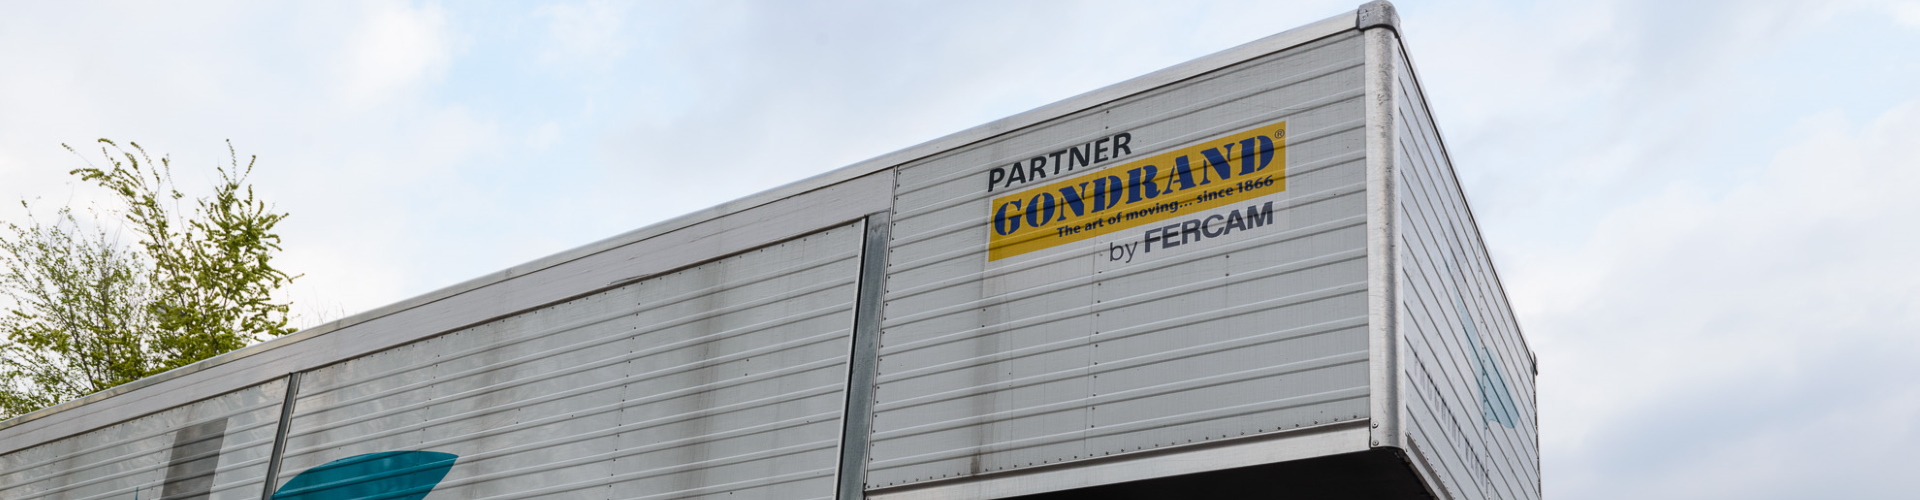 marchio partner Gondrand su mezzo Facchini Verdi 